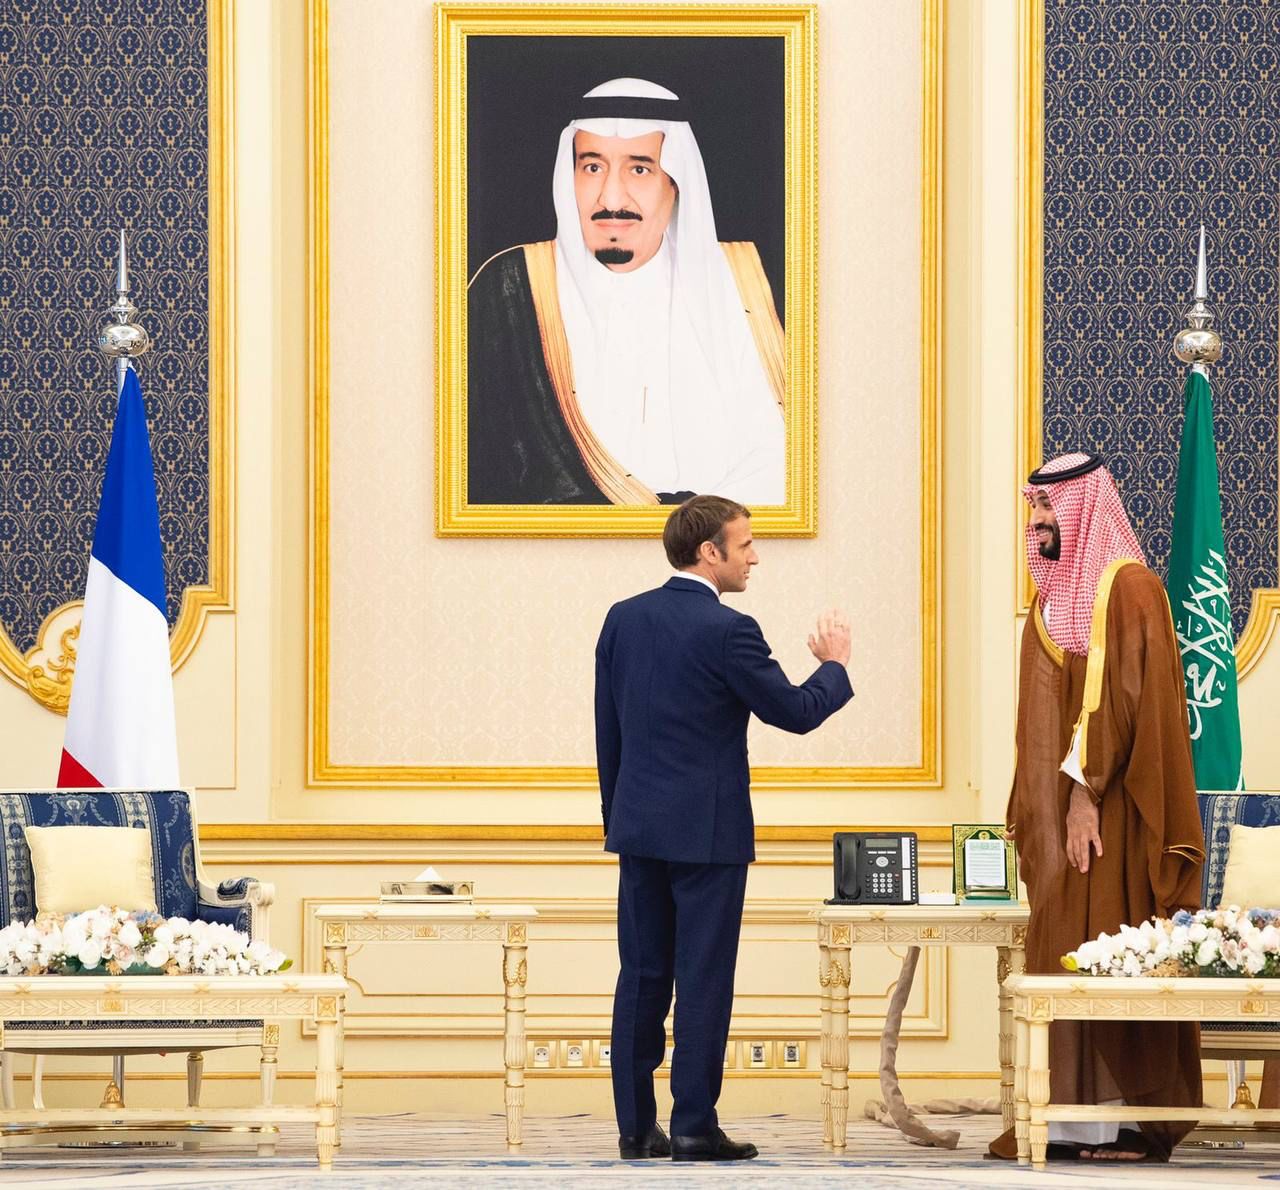 لقطات من استقبال محمد بن سلمان للرئيس الفرنسي